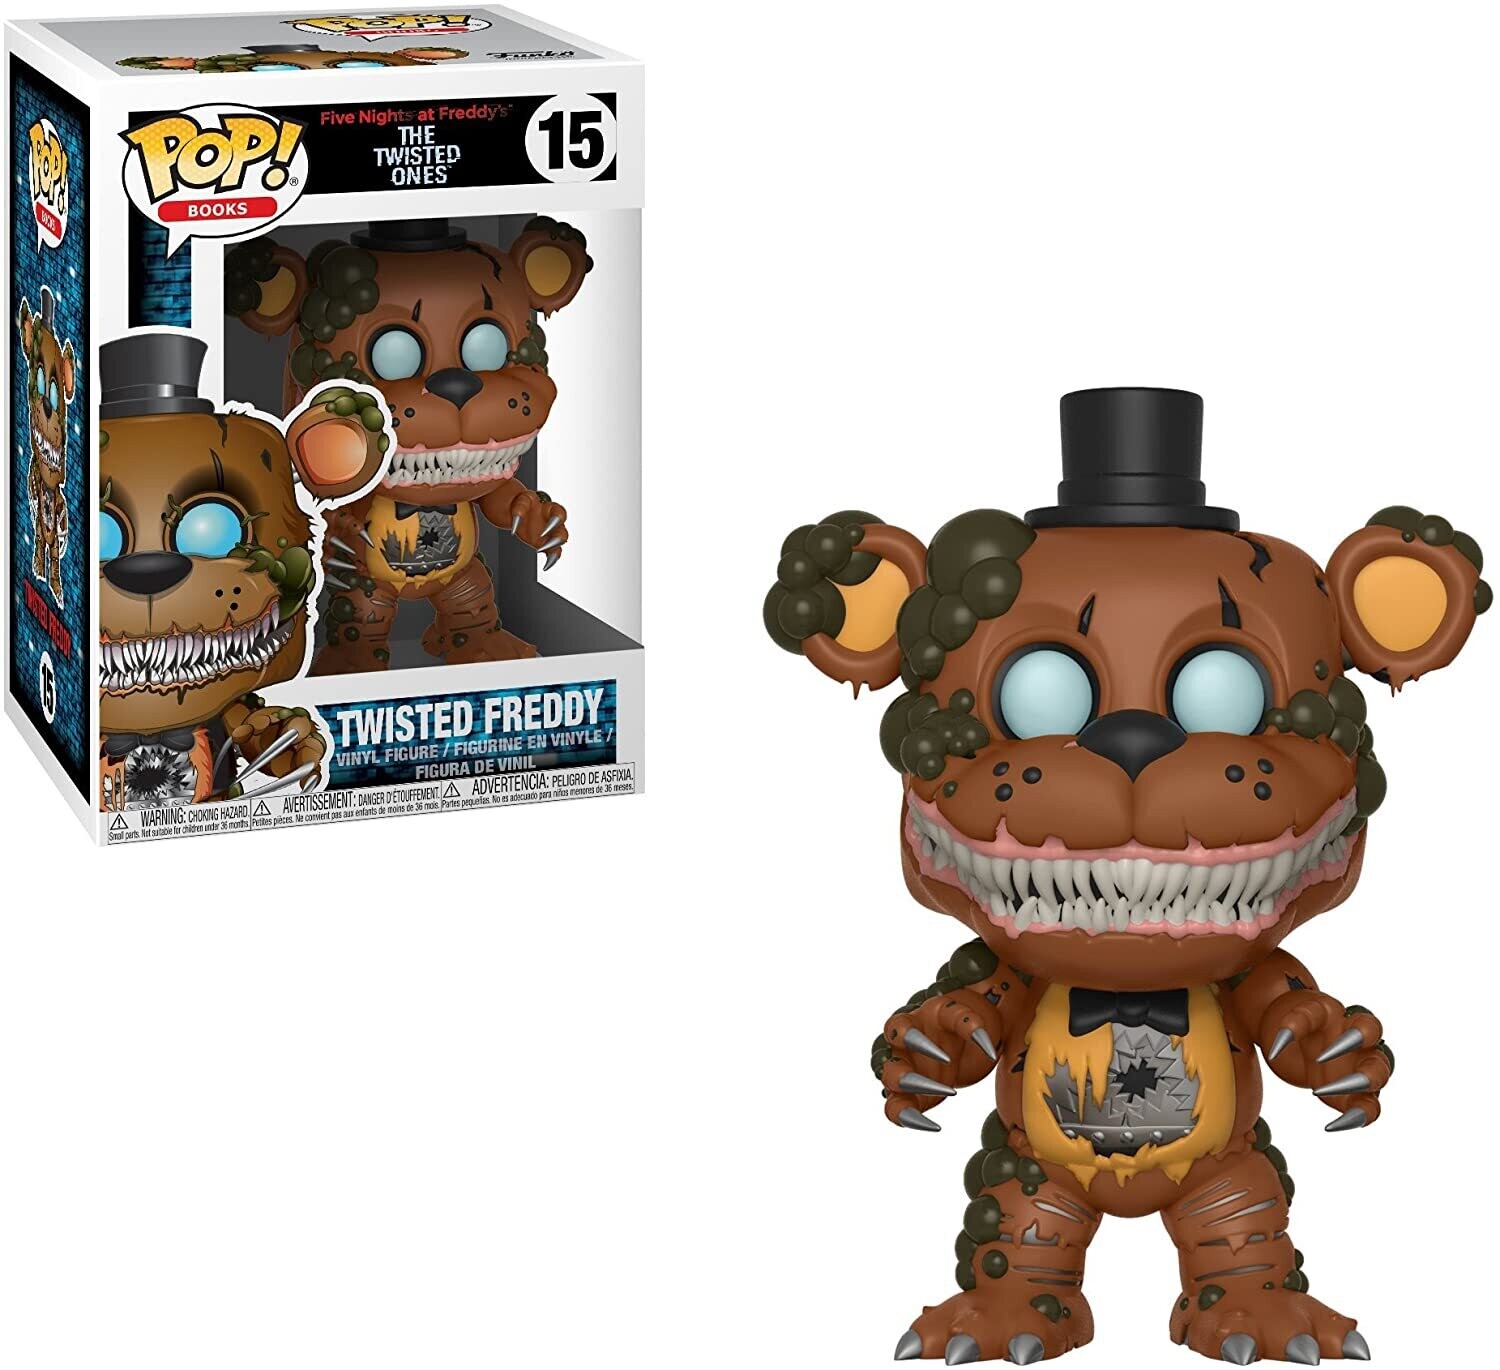 Funko Pop! Twisted Freddy #15 - Five Nights at Freddy's